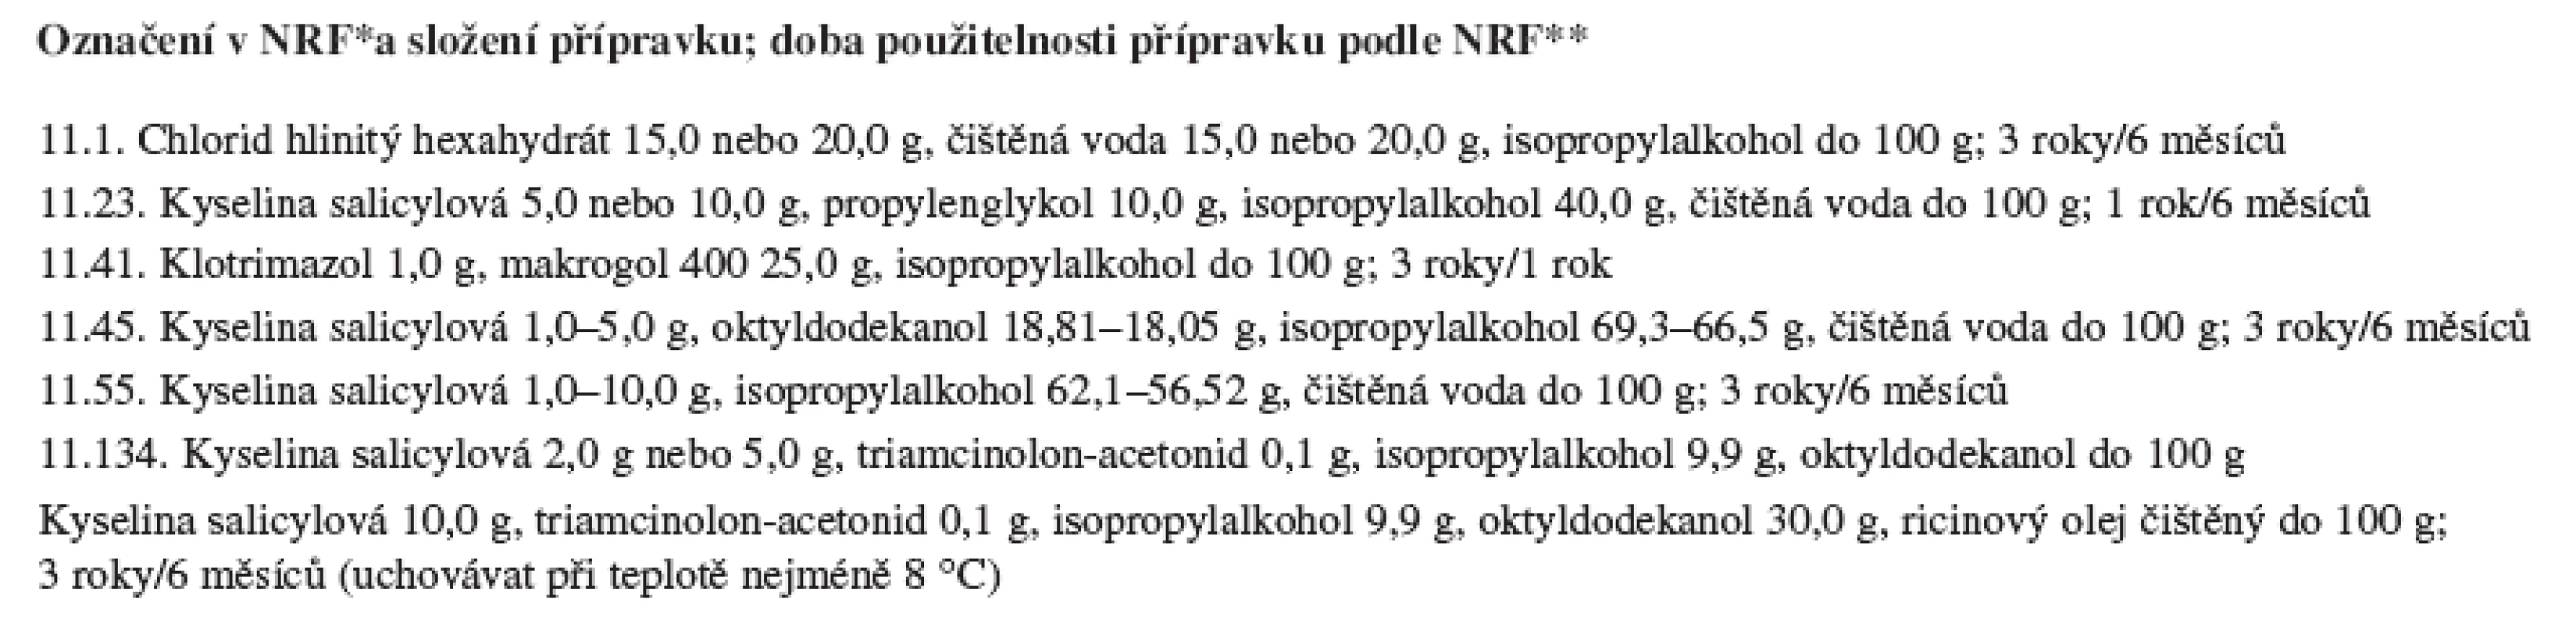 Přípravky NRF k vnější aplikaci obsahující isopropylalkohol